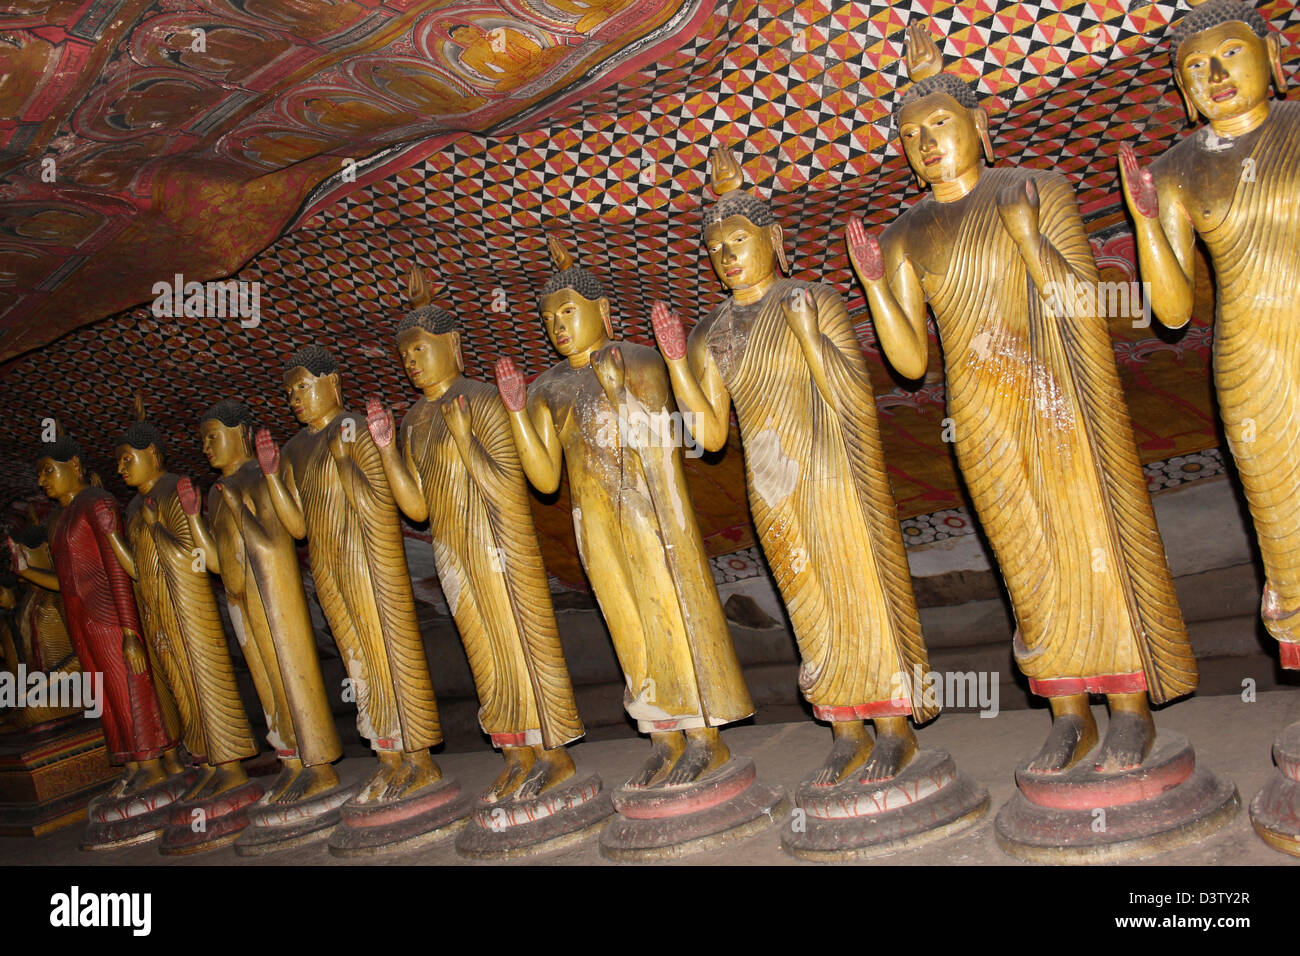 L'article images de Bouddha au François la Maha Vihara Dambulla Cave Temple Banque D'Images